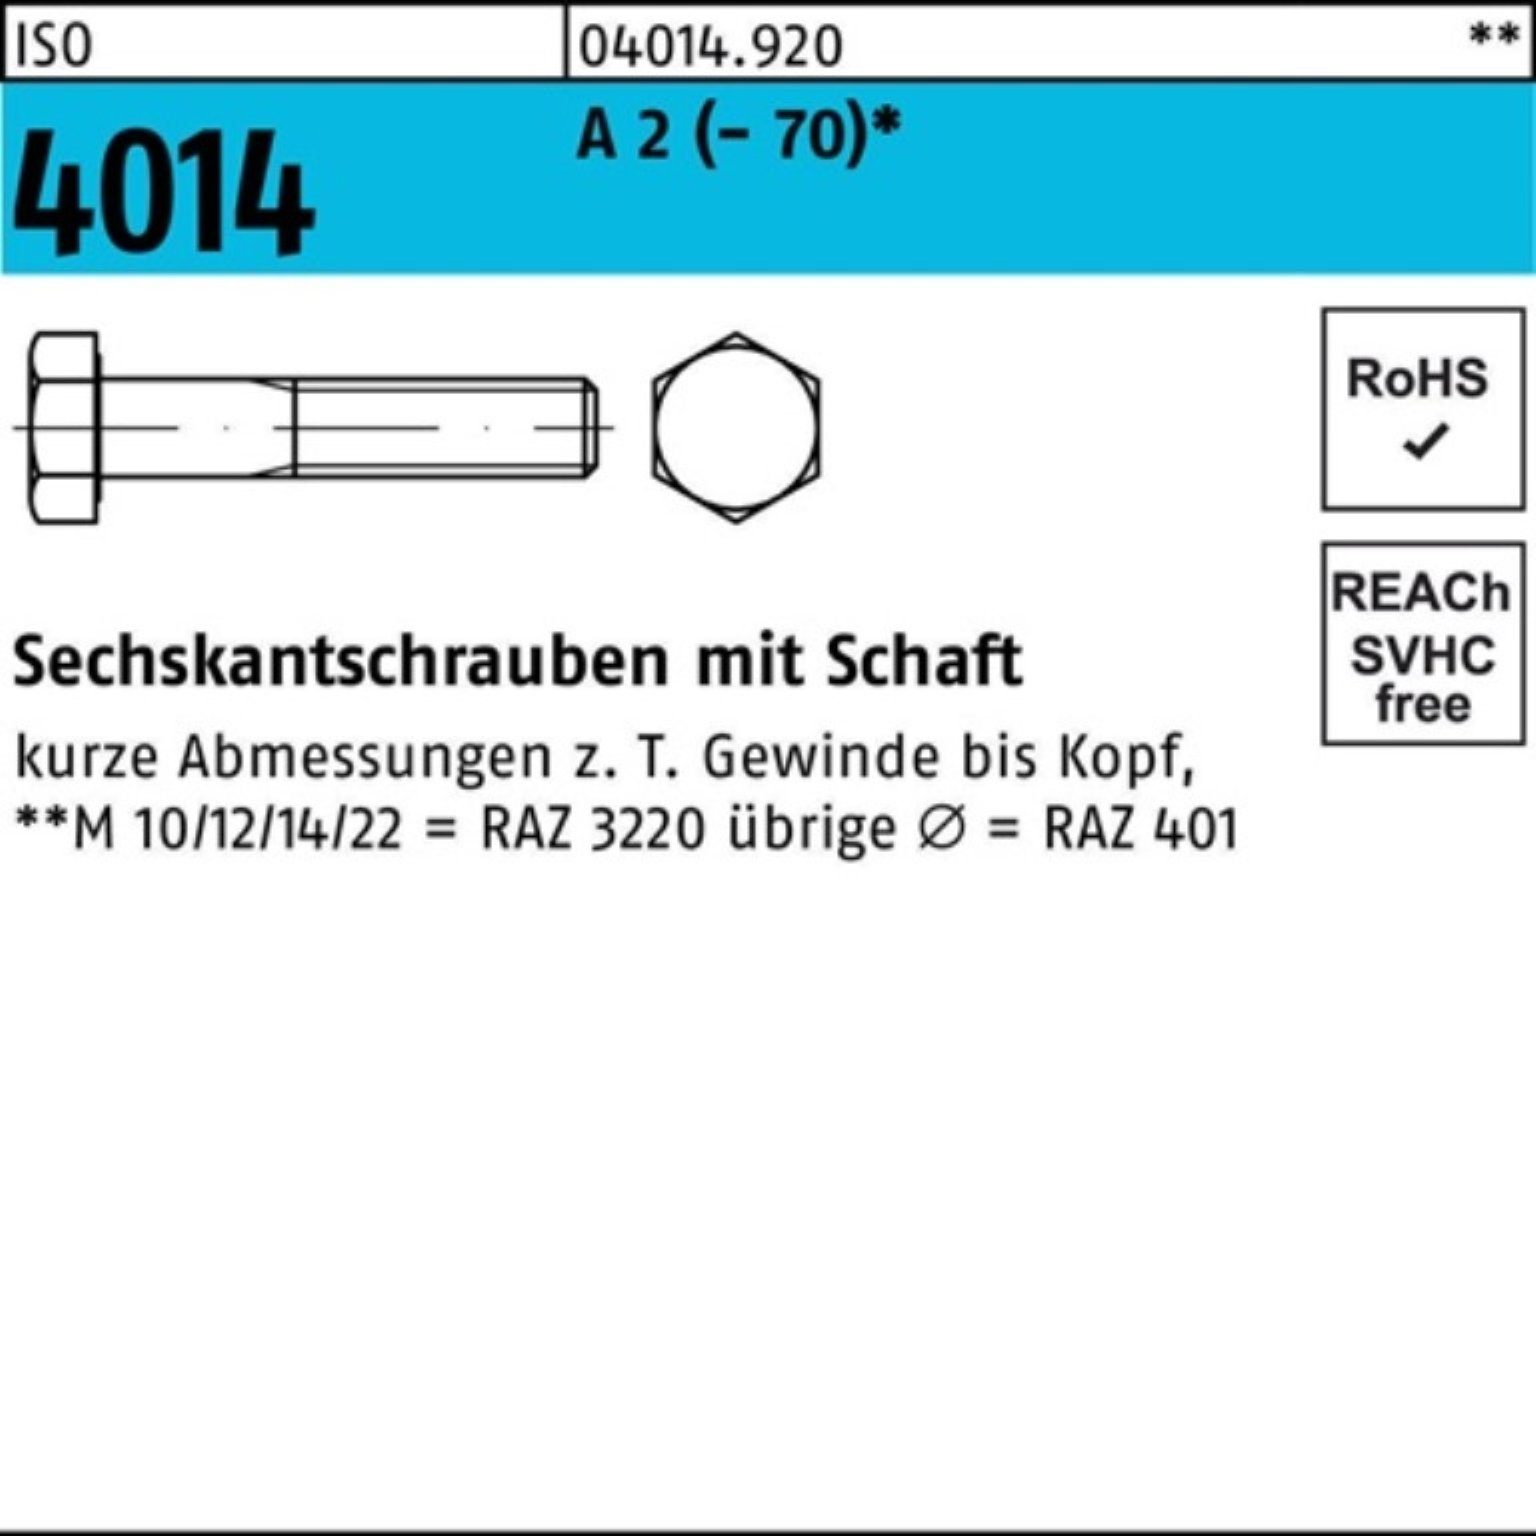 Bufab Sechskantschraube 100er Pack Sechskantschraube ISO 4014 Schaft M8x 55 A 2 (70) 100 St